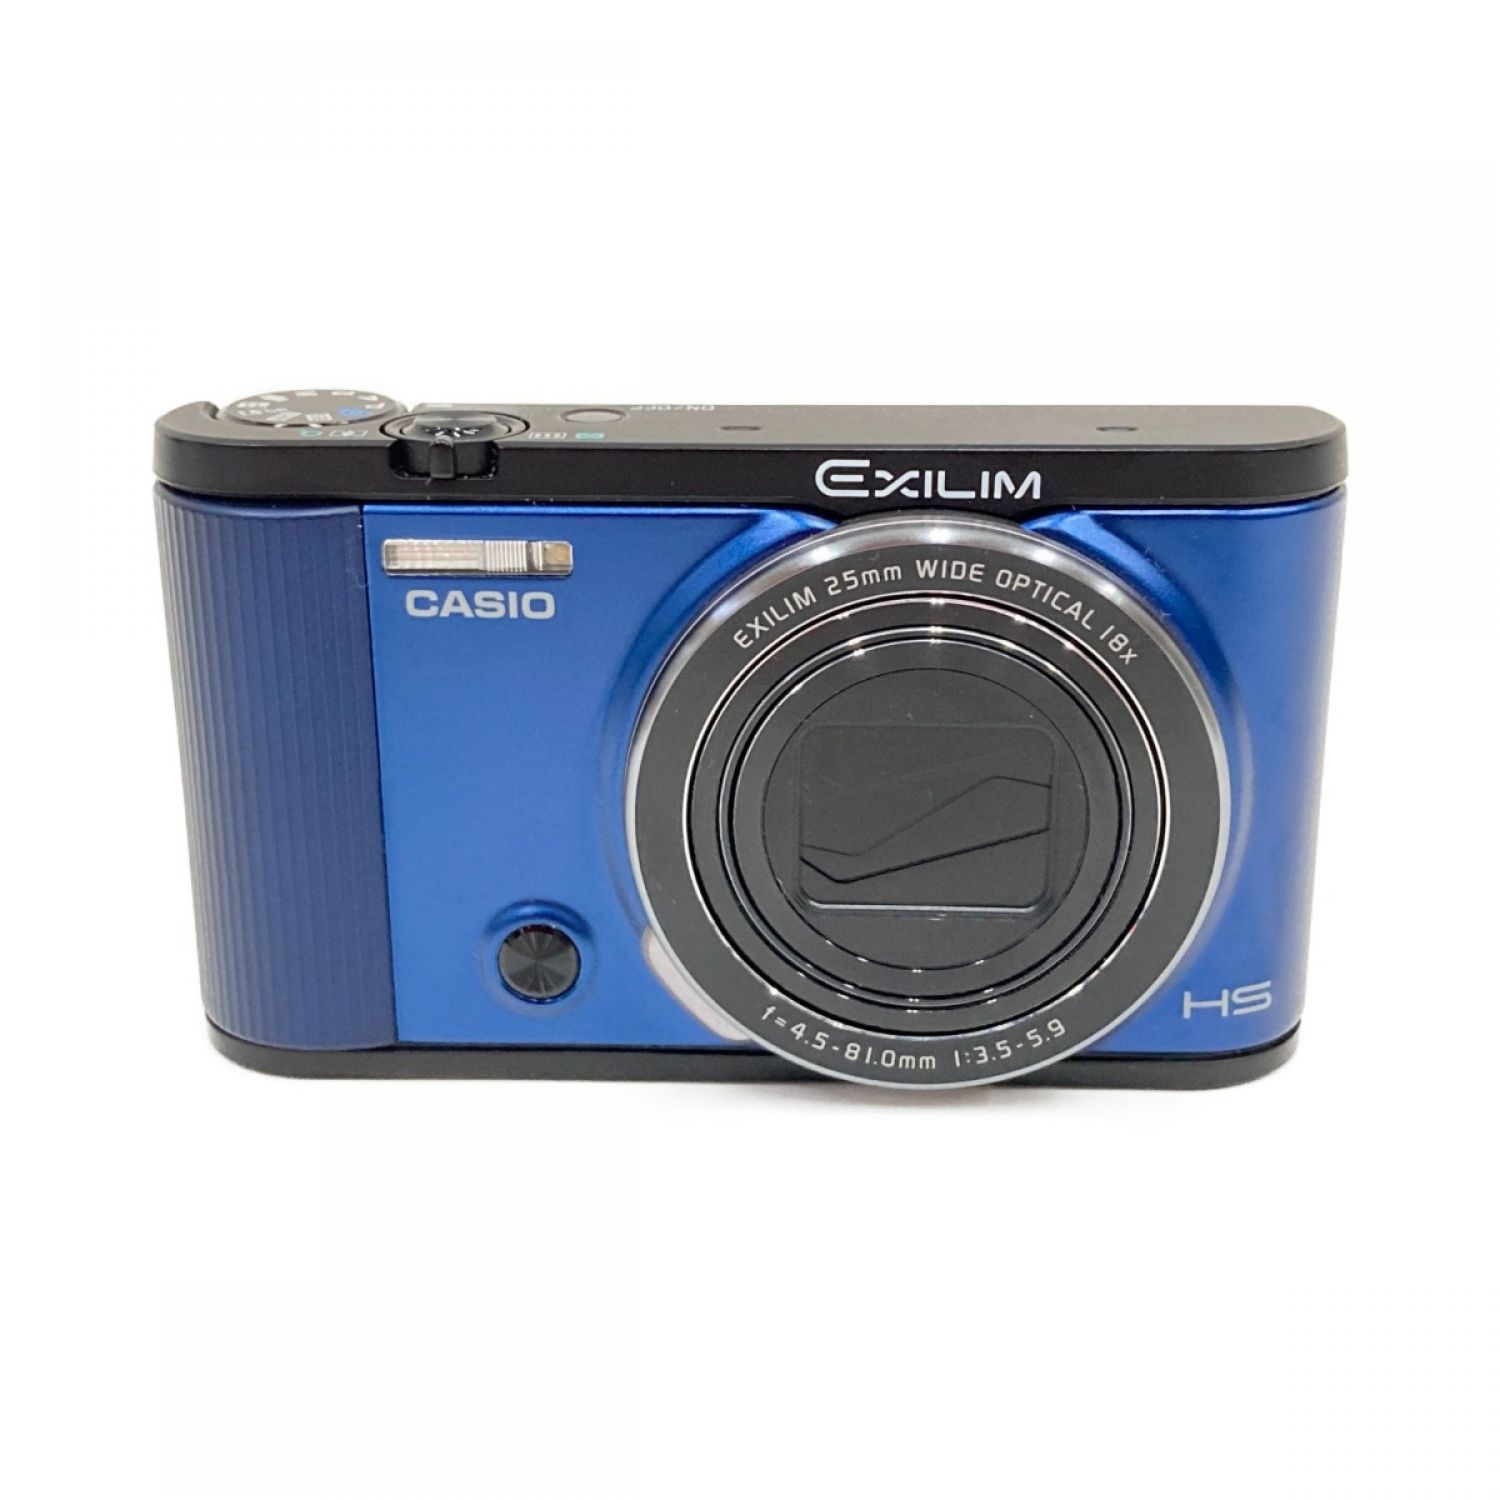 CASIO デジタルカメラ EXILIM EX-ZR1600コンパクトデジタルカメラ